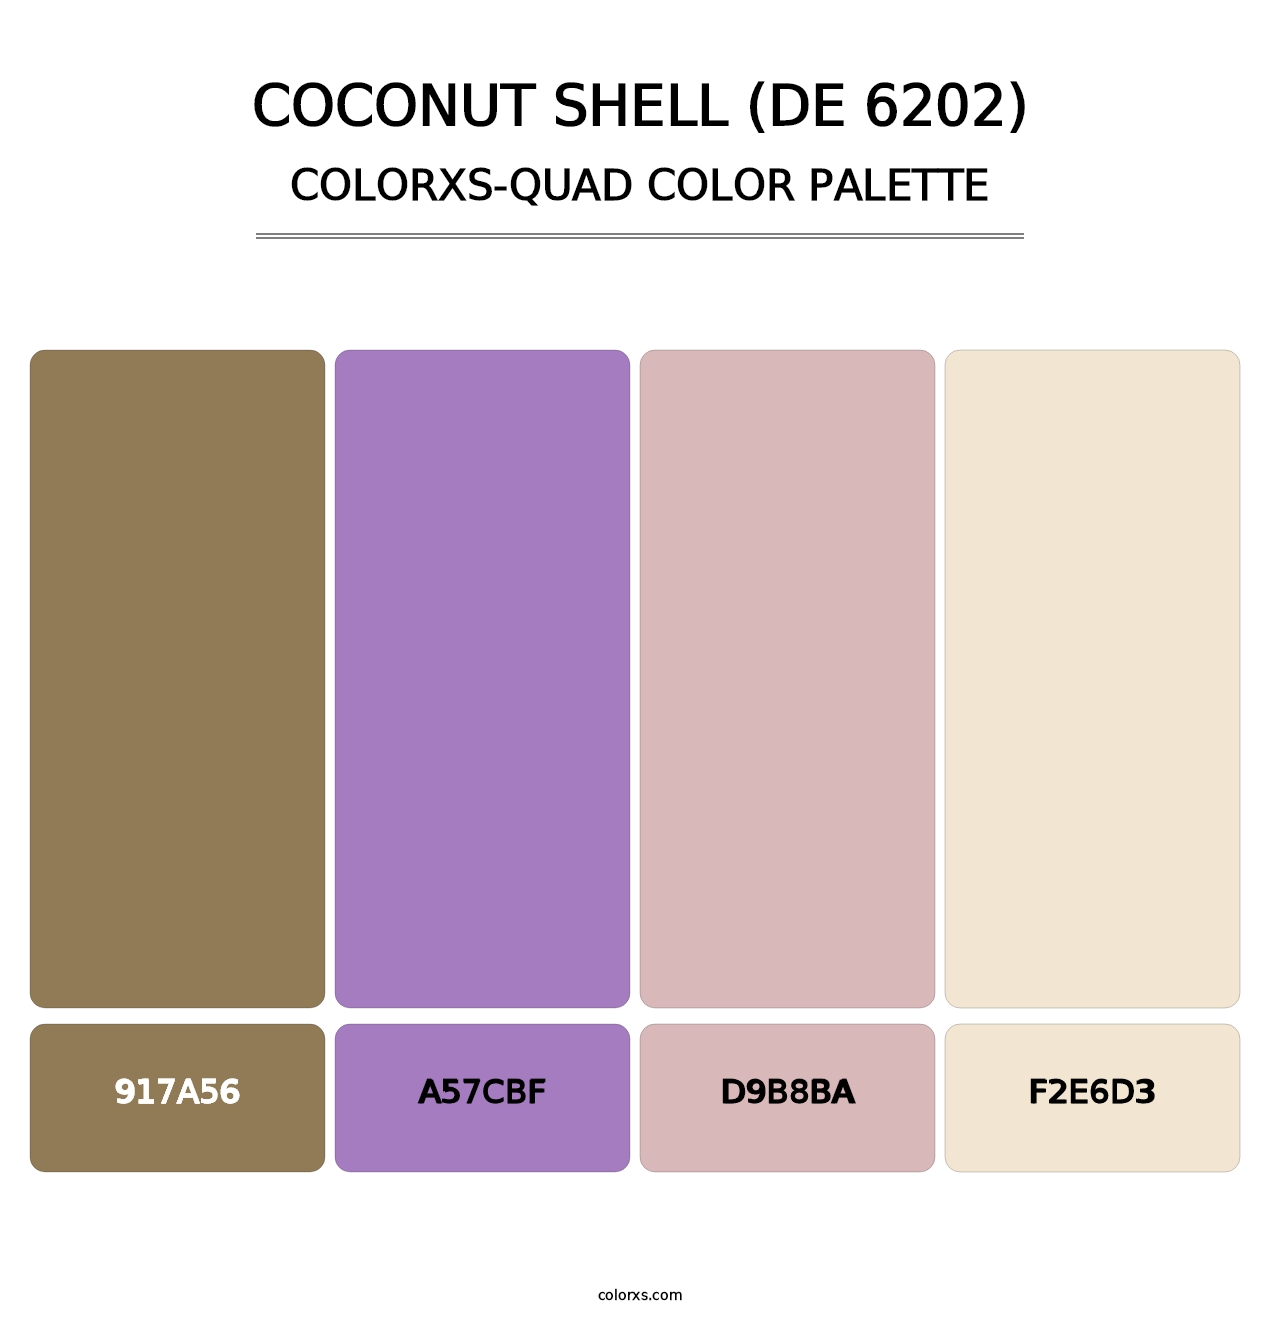 Coconut Shell (DE 6202) - Colorxs Quad Palette